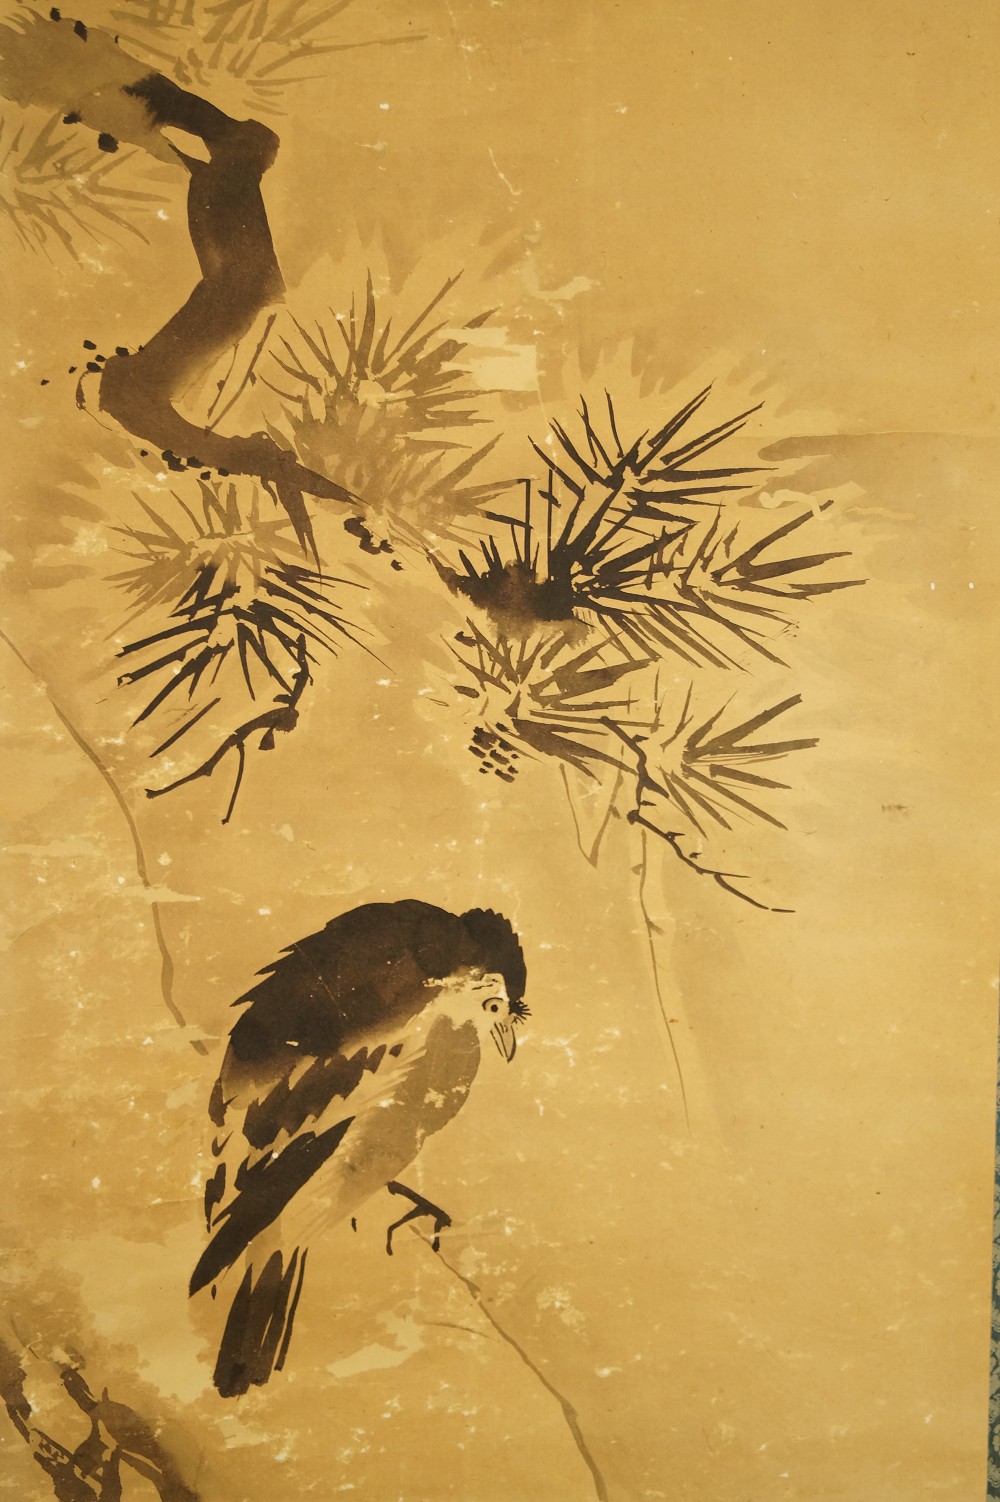 Vogel auf einer Kiefer - Japanisches Rollgemälde (Kakejiku, Kakemono) Tanaka Koga